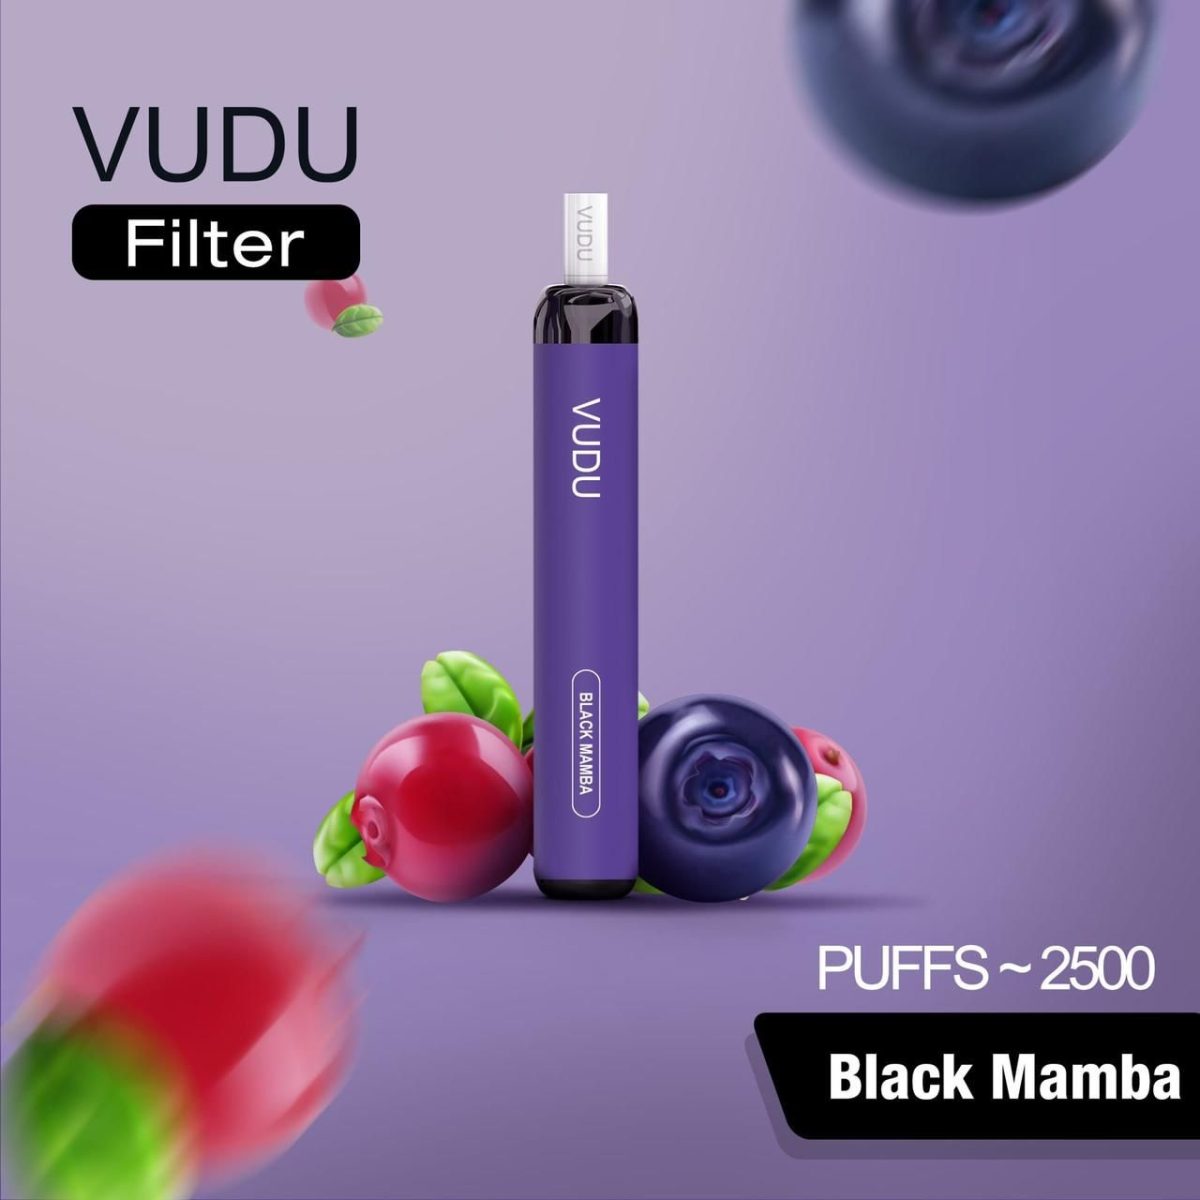 VUDU Filter Disposable 2500 Puffs- Black Mamba